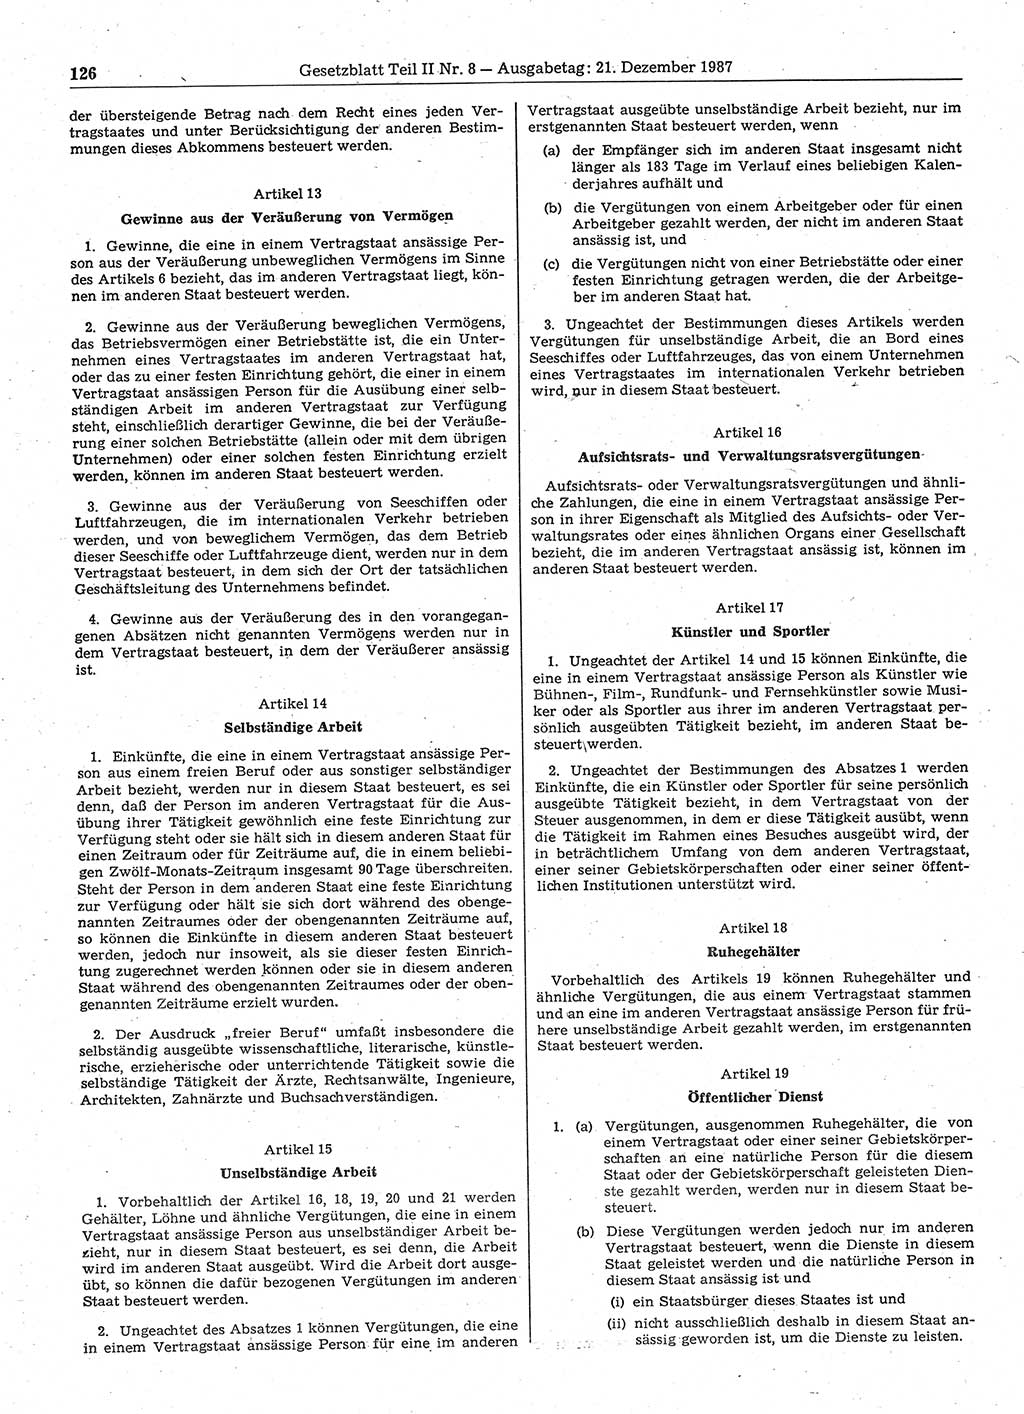 Gesetzblatt (GBl.) der Deutschen Demokratischen Republik (DDR) Teil ⅠⅠ 1987, Seite 126 (GBl. DDR ⅠⅠ 1987, S. 126)